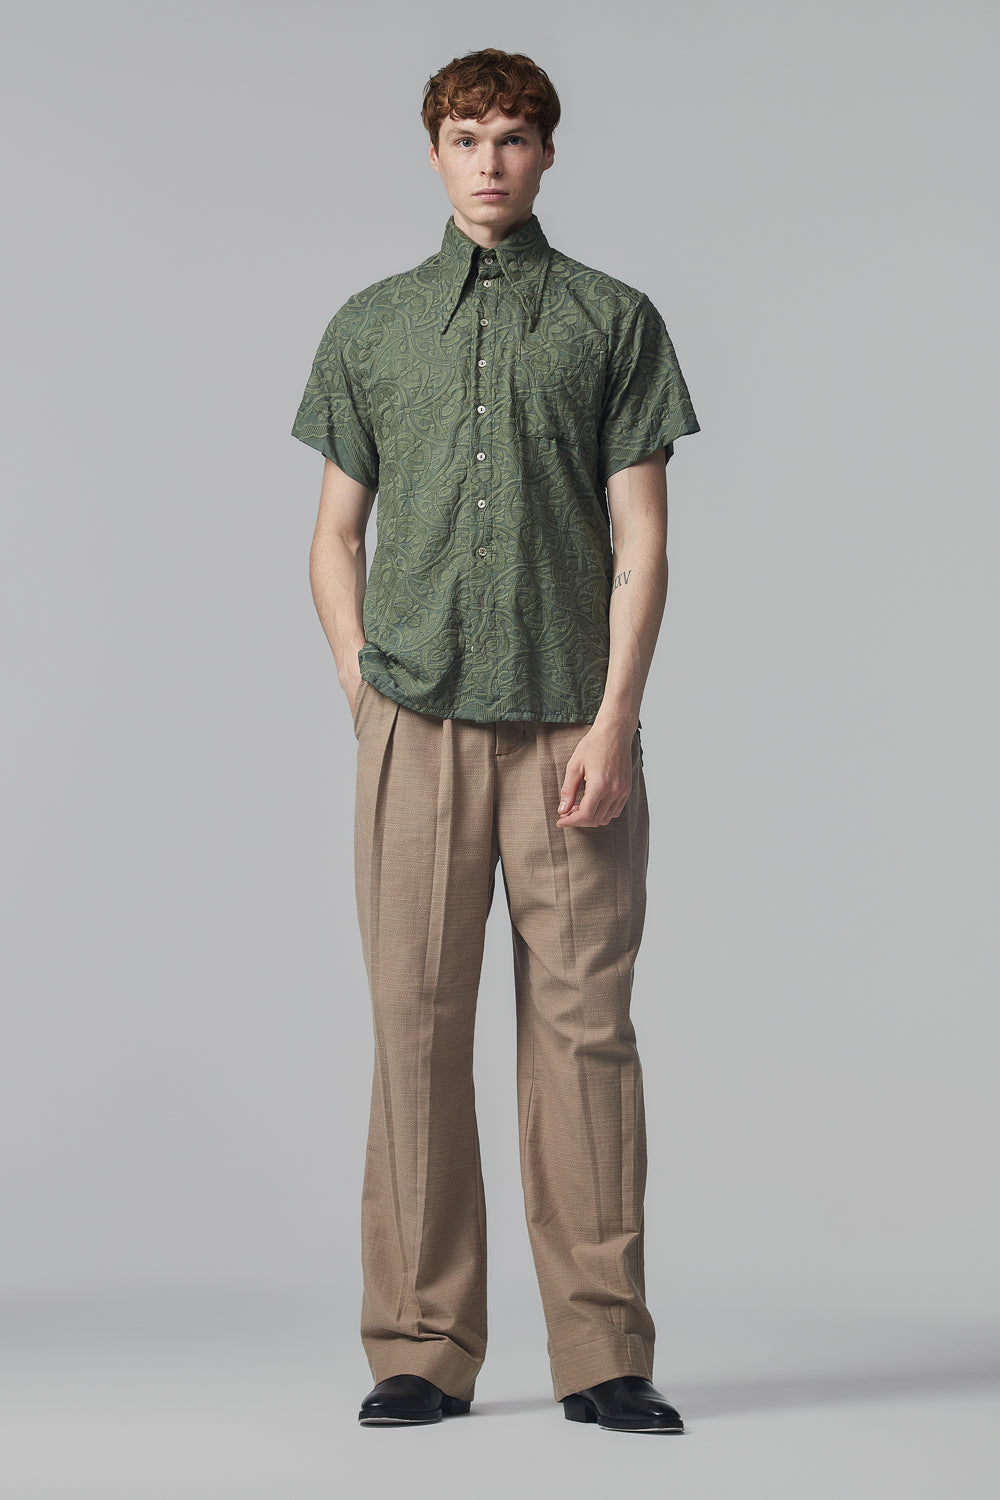 Camisa de Mangas Curtas em Algodão Verde-Eucalipto Bordado ao Estilo Art-Nouveau